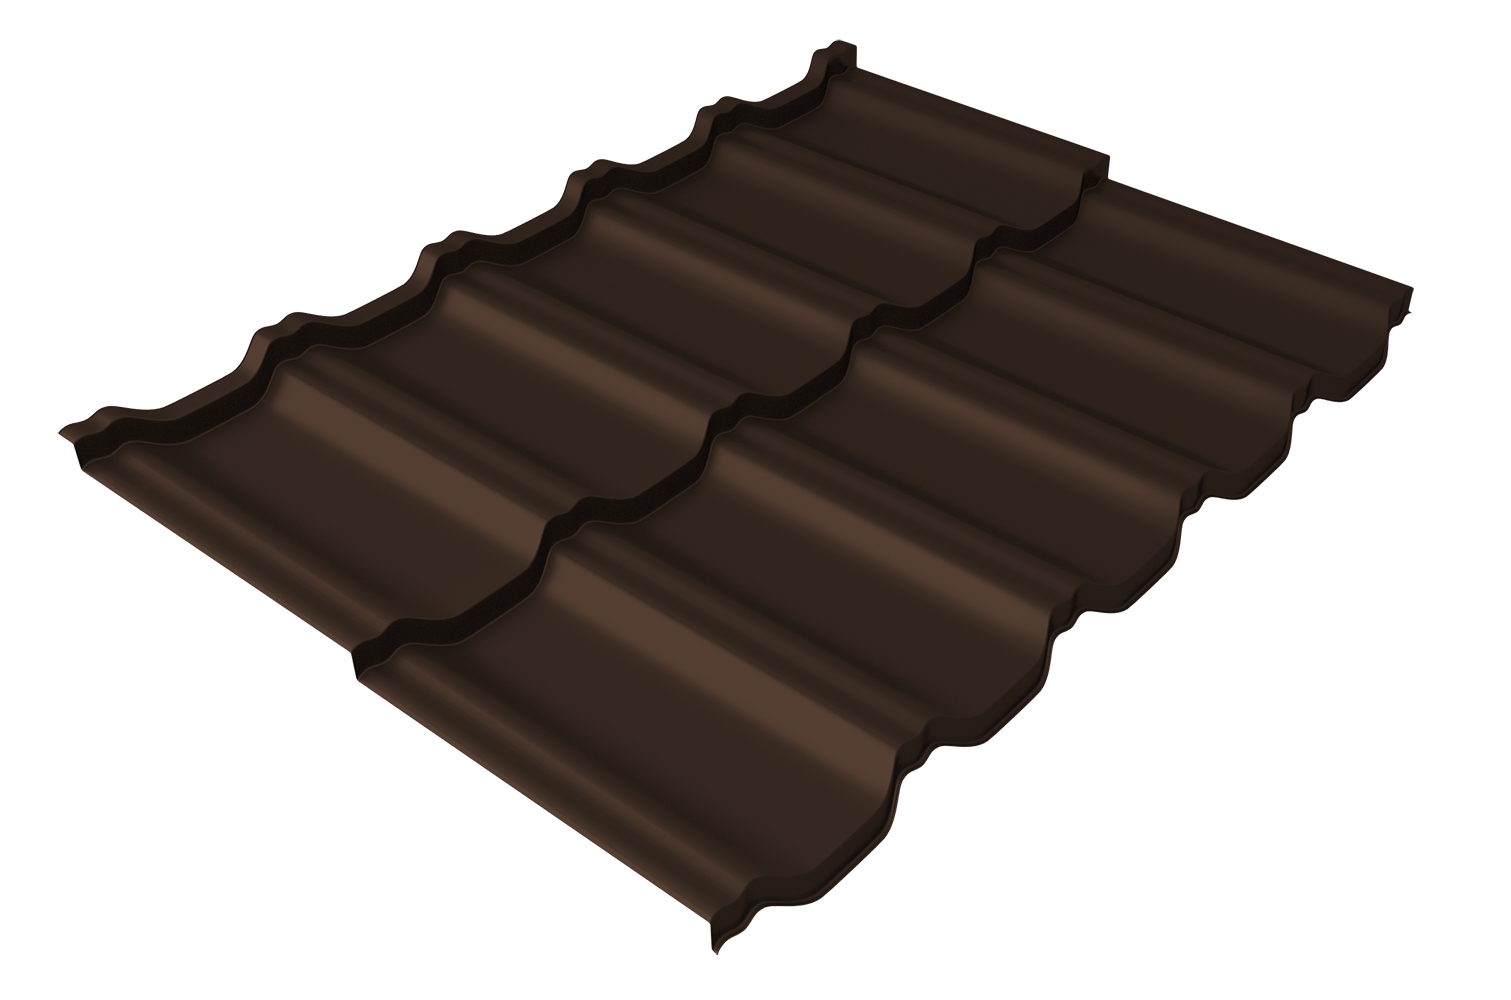 Металлочерепица модульная квинта Uno Grand Line c 3D резом 0,5 Rooftop Бархат RAL 8017 шоколад